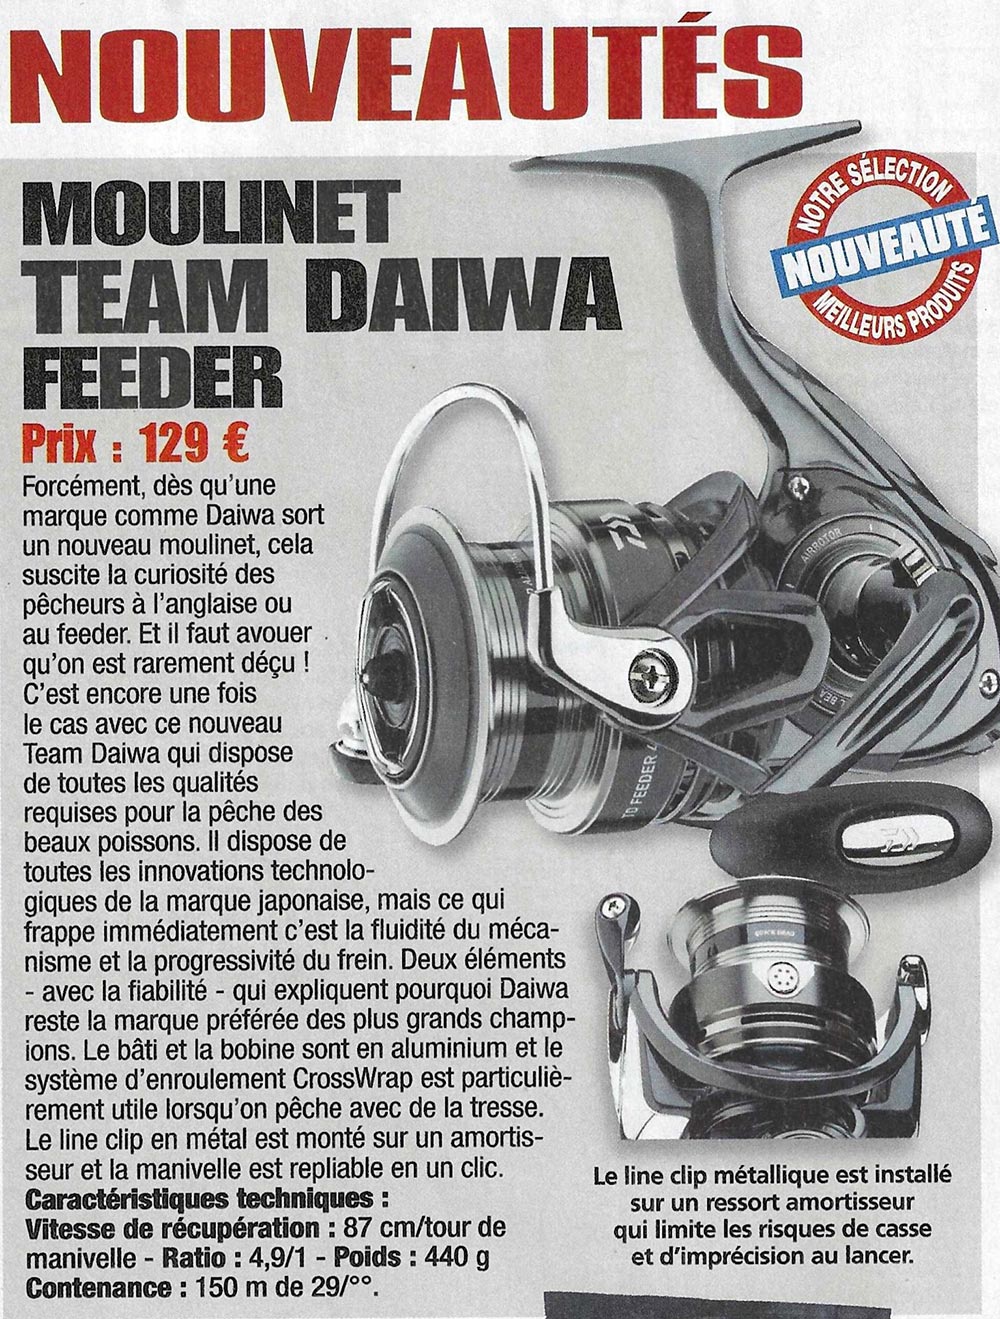 moulinet daiwa feeder